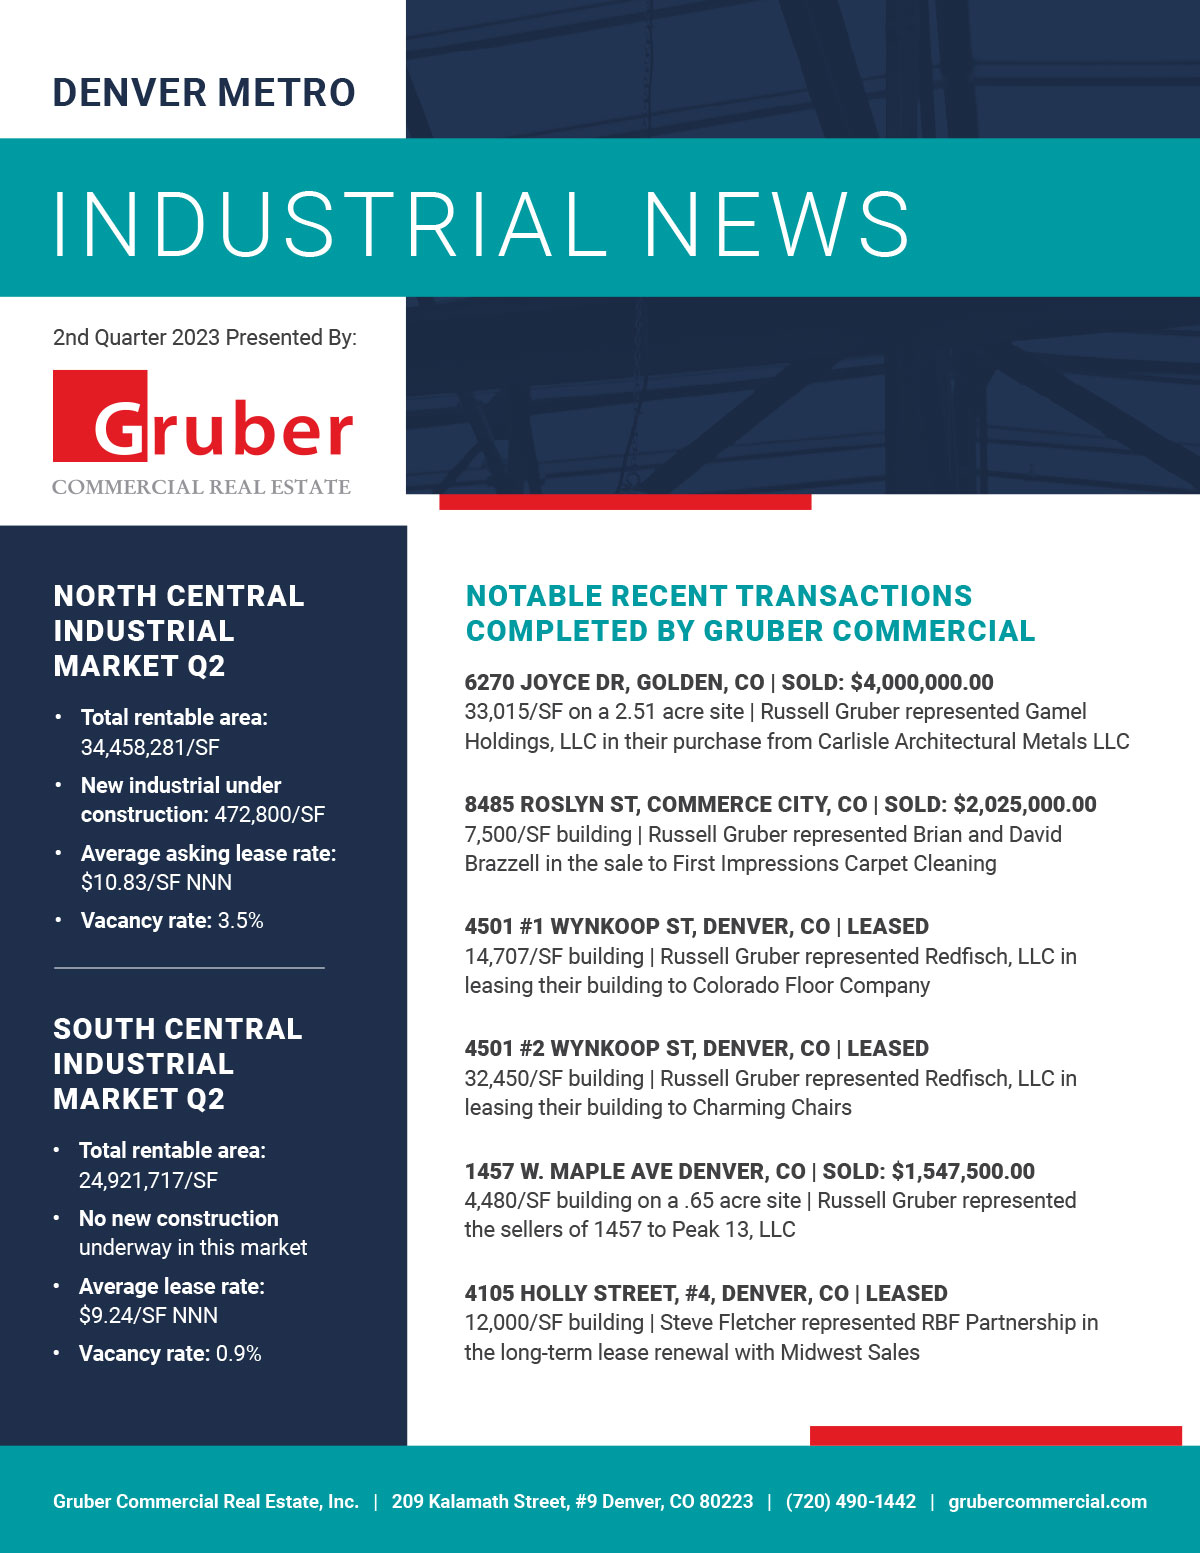 Gruber Newsletter: 2nd Quarter 2023